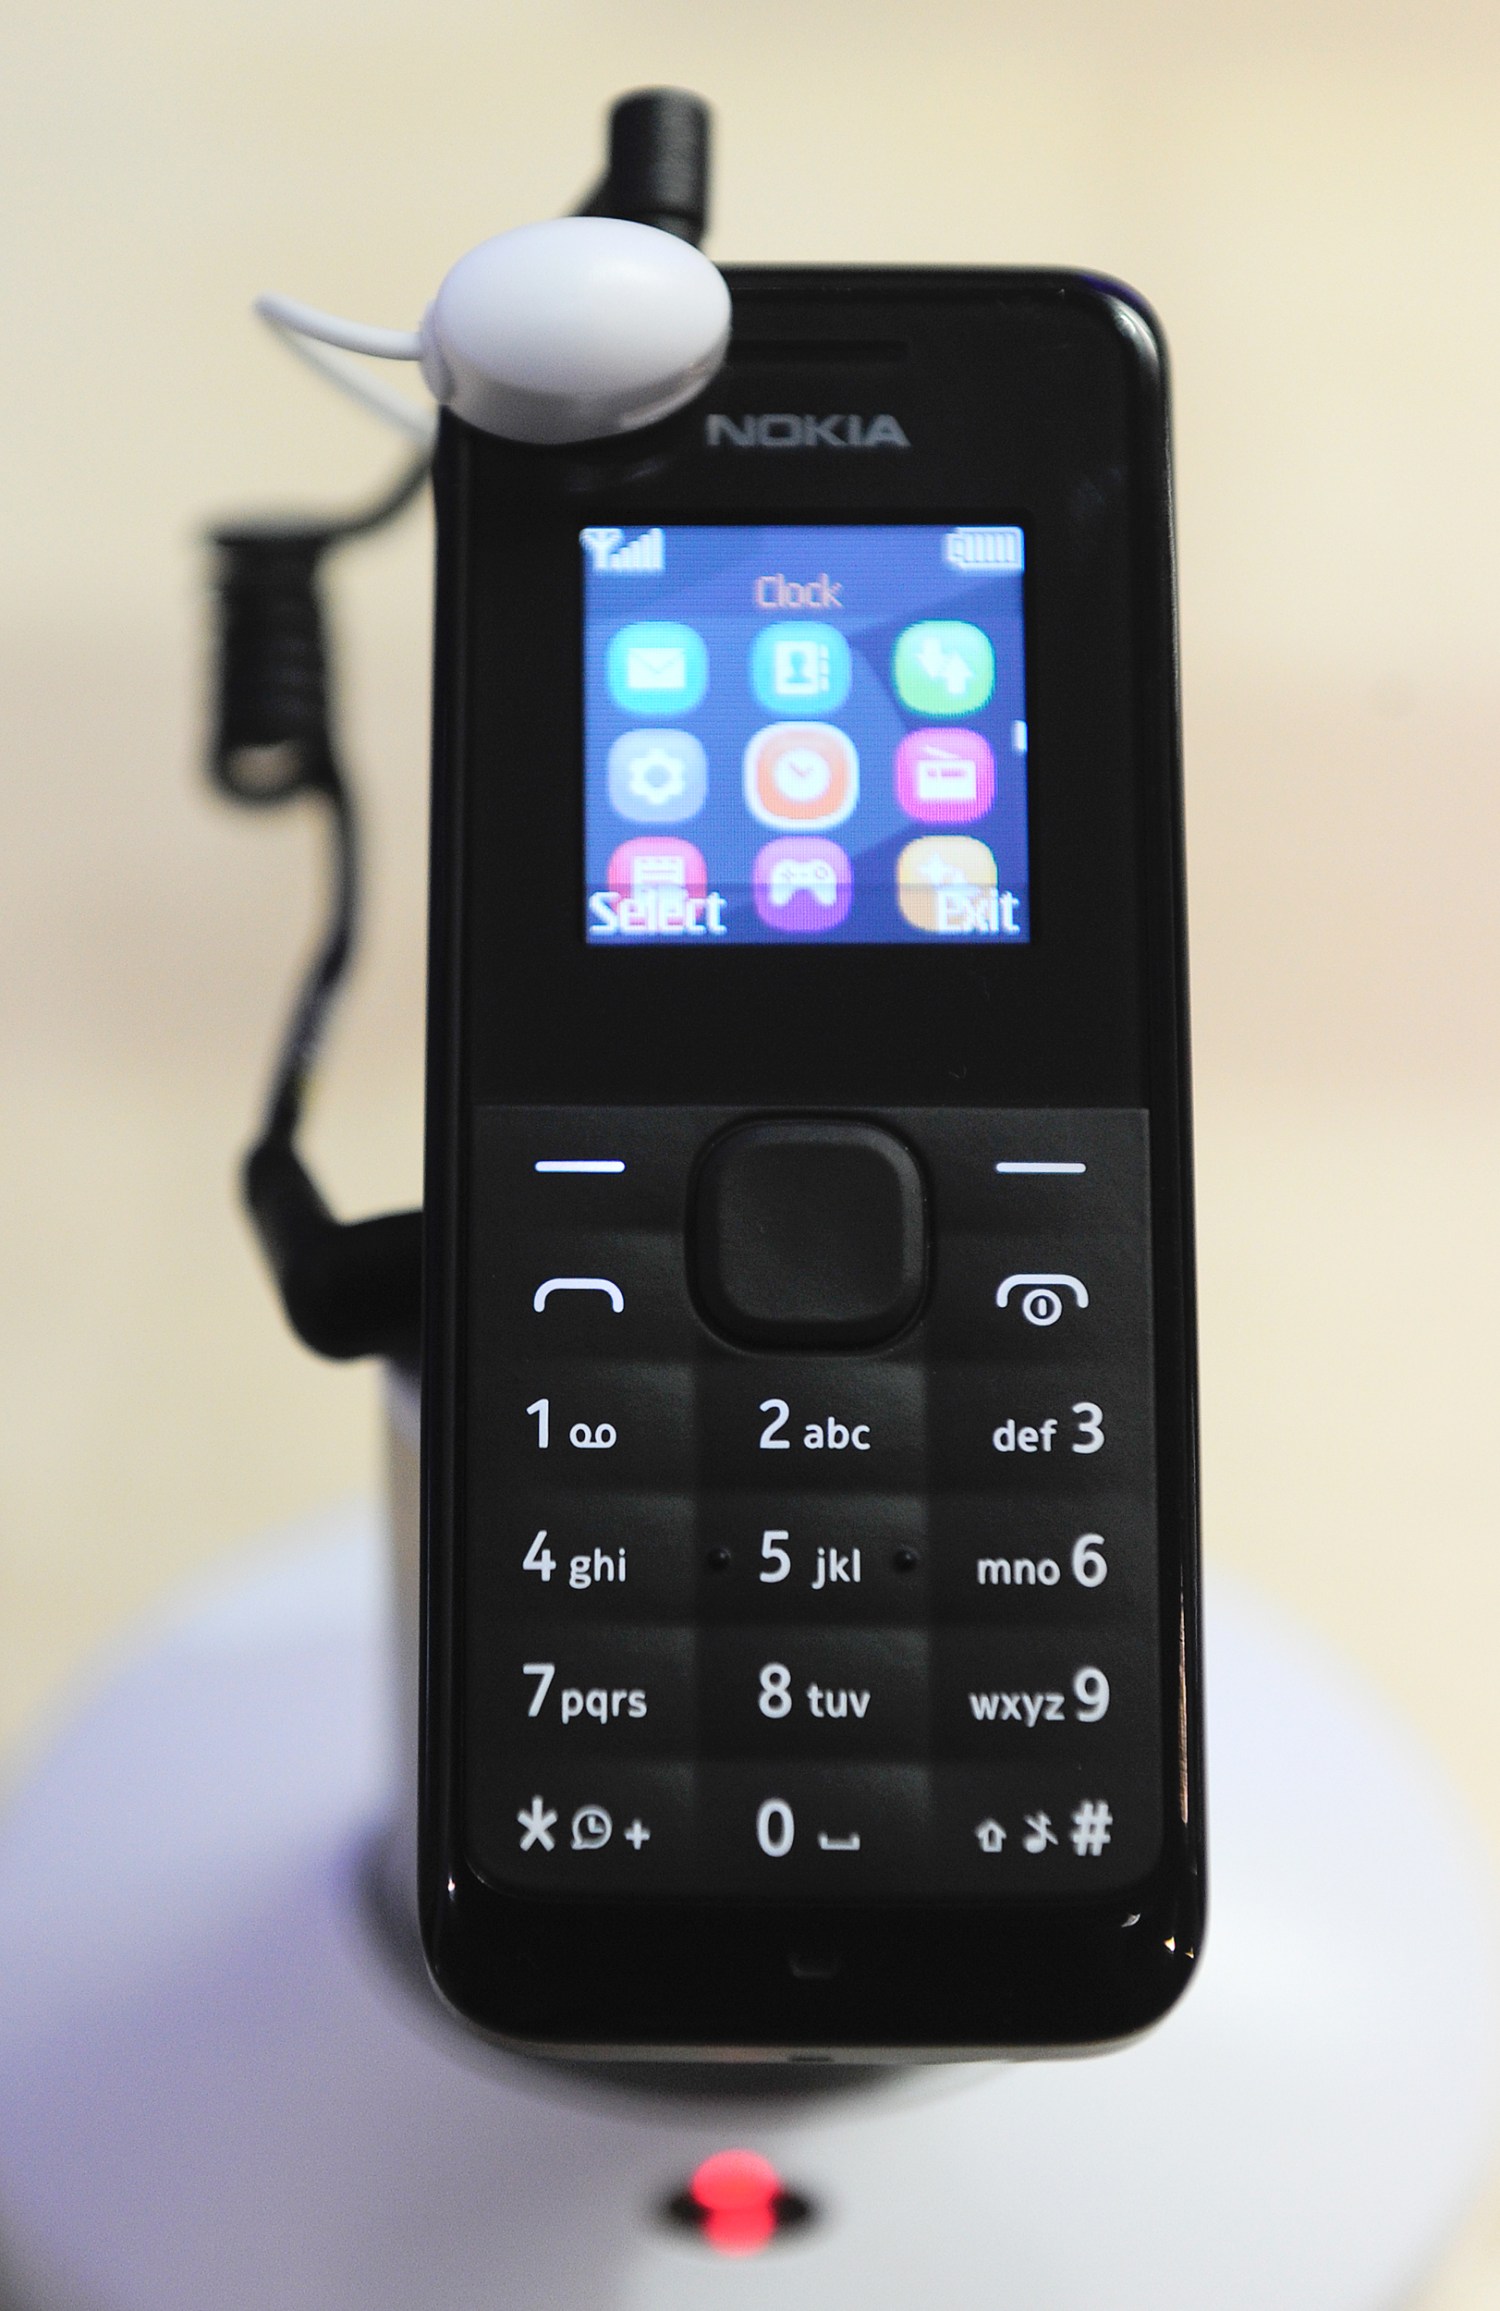 Nokia 105: Hình ảnh (Pictures) Với màn hình HD 1.8 inch và máy ảnh VGA, Nokia 105 sẽ giúp bạn tạo ra những bức ảnh đẹp ngay cả trong điều kiện ánh sáng thấp. Dễ dàng chia sẻ những kỷ niệm với bạn bè và gia đình ngay khi chúng xảy ra với Nokia